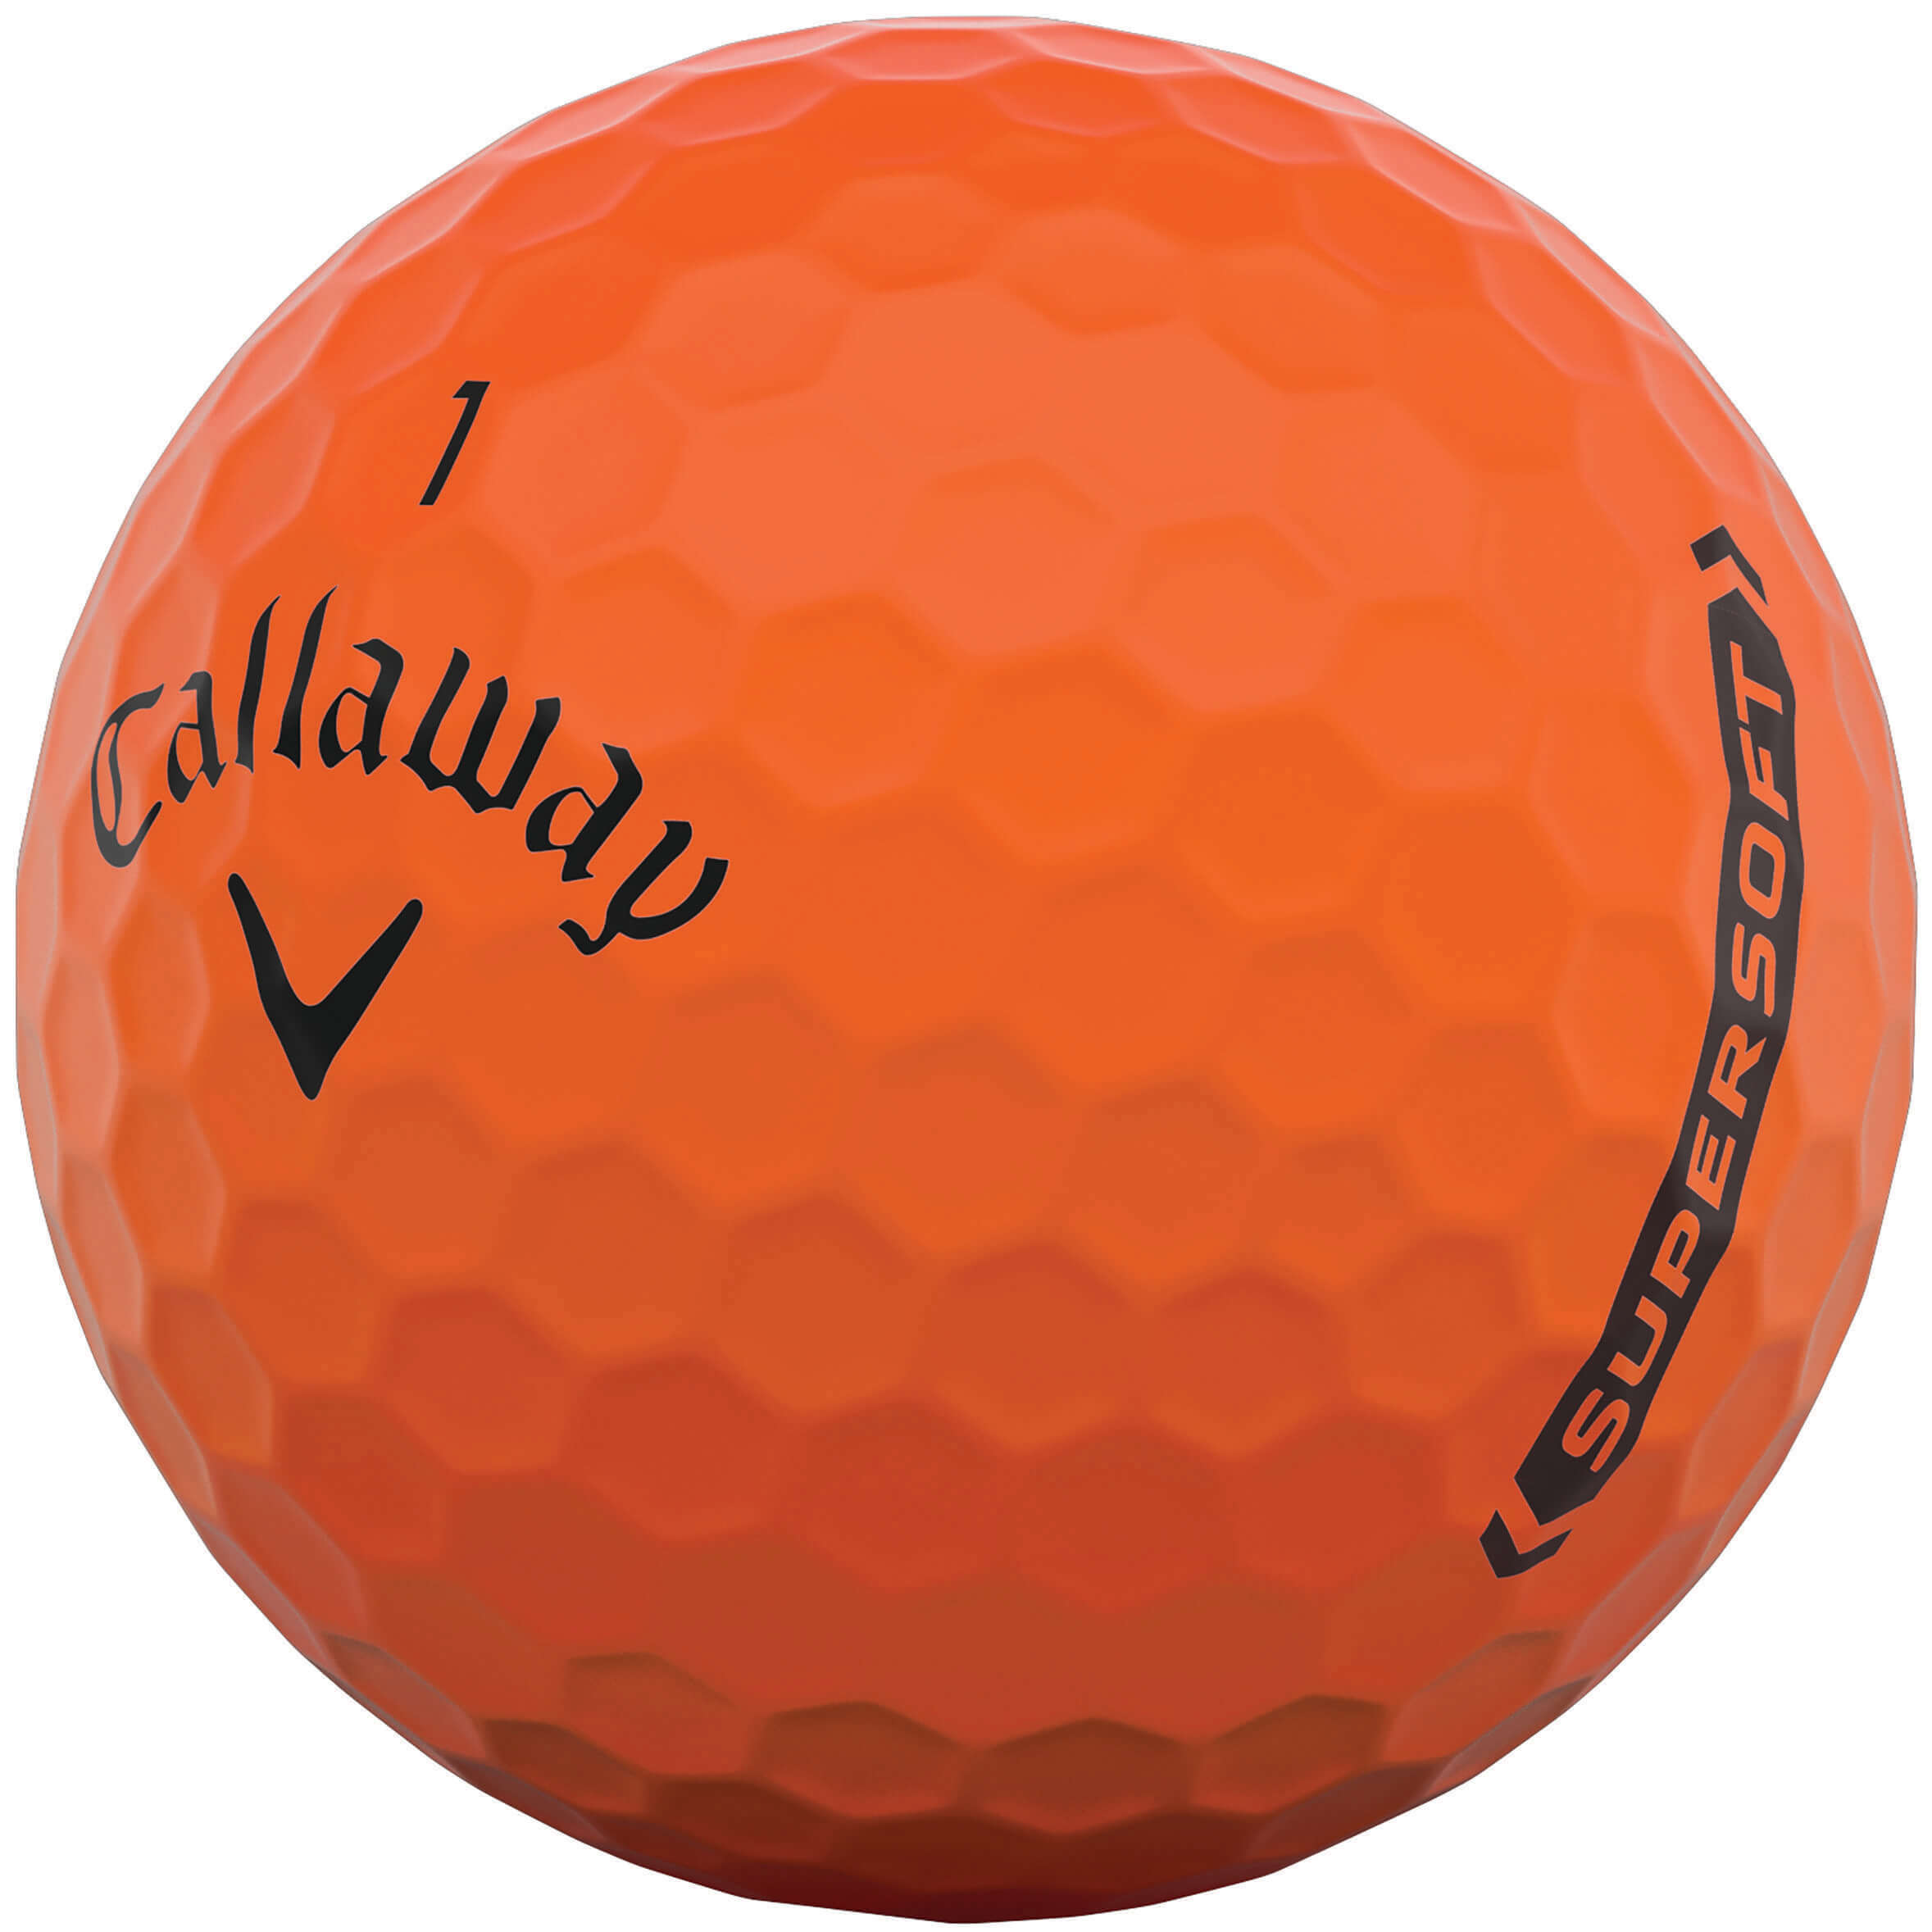 Callaway Supersoft Golfbälle, matte orange